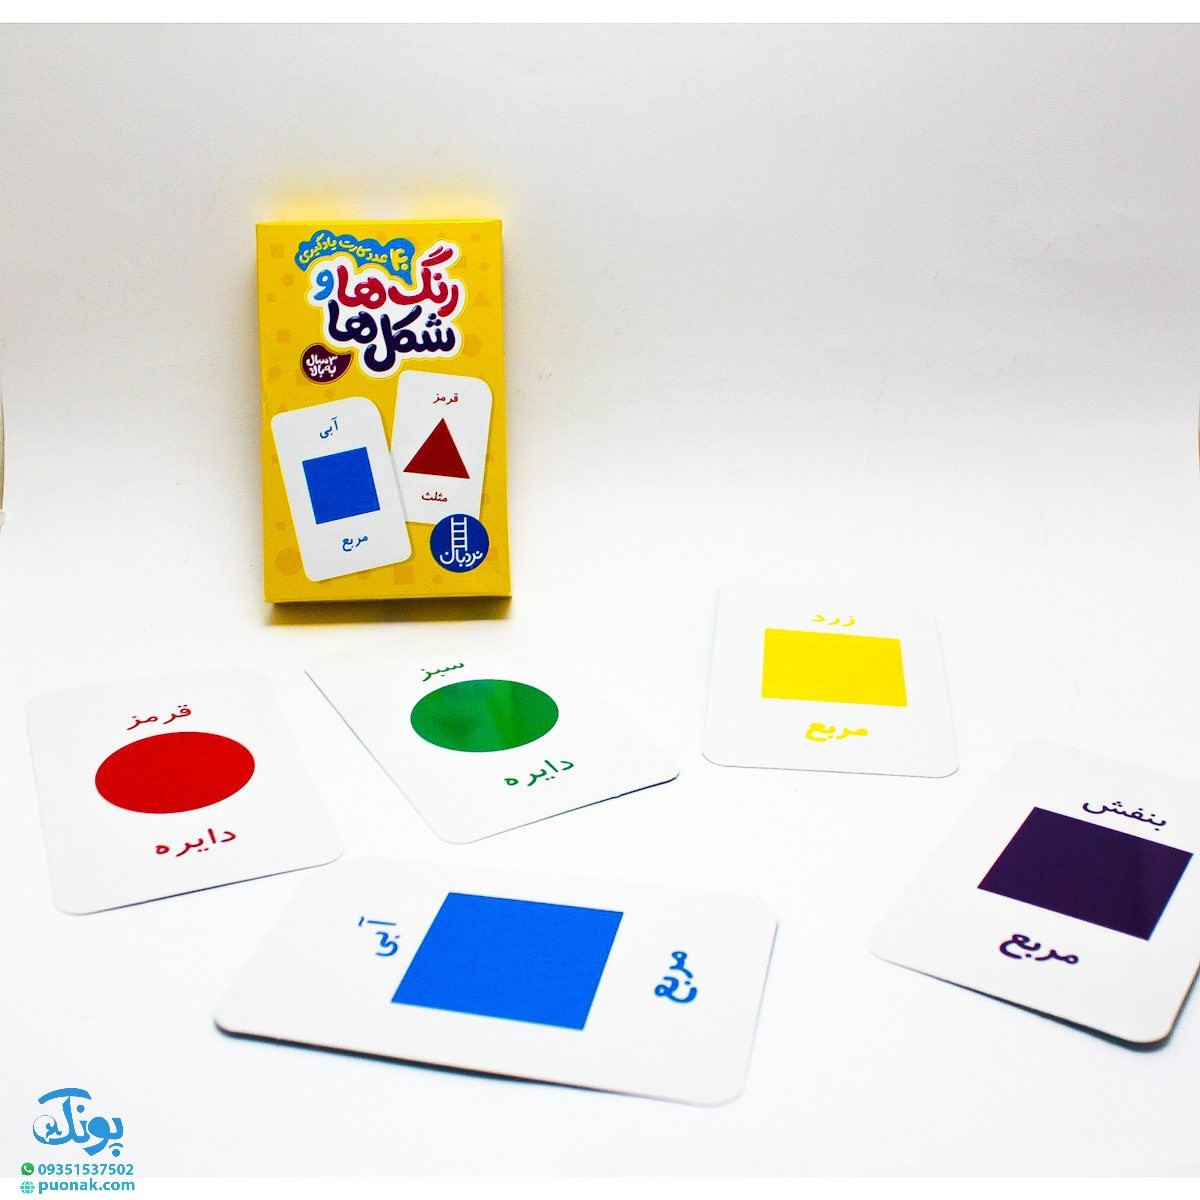 بسته آموزشی رنگ ها و شکل ها (۴۰ عدد کارت یادگیری رنگ ها و شکل ها) | نردبان